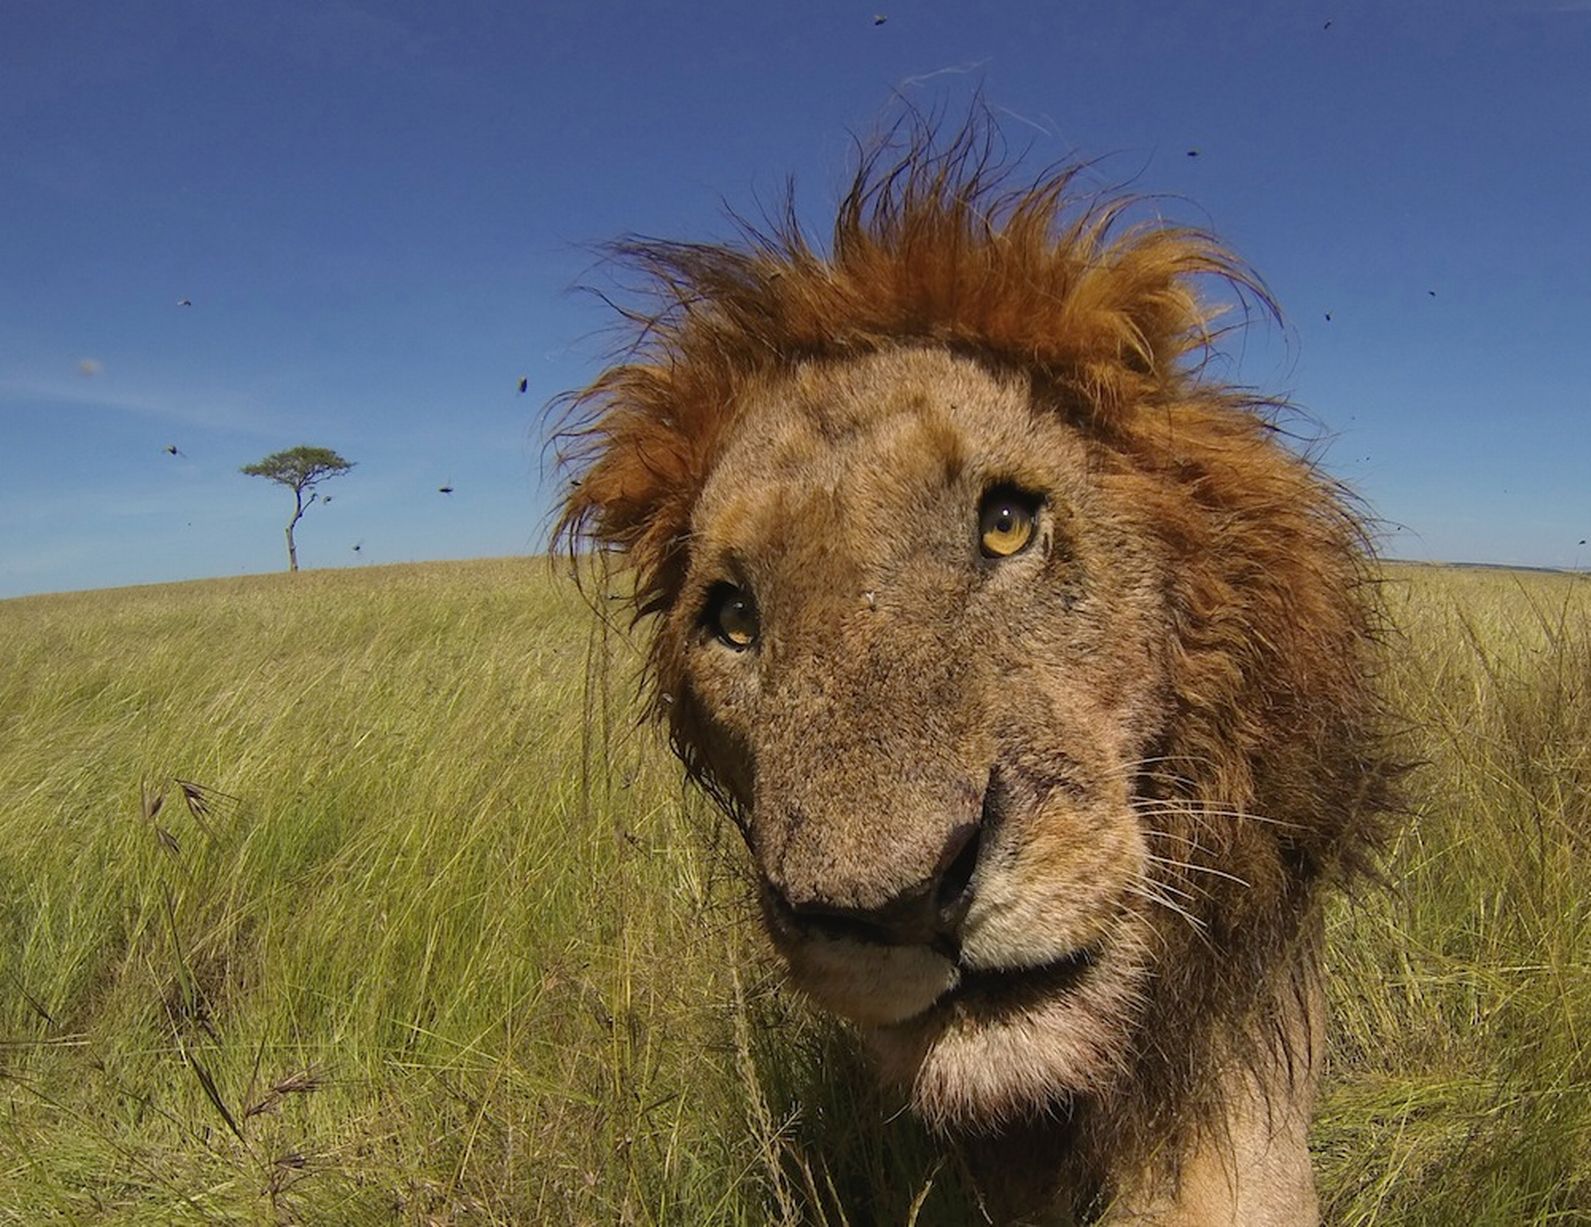 Lev osmatrivaet kameru v natcionalnom parke Masai Mara